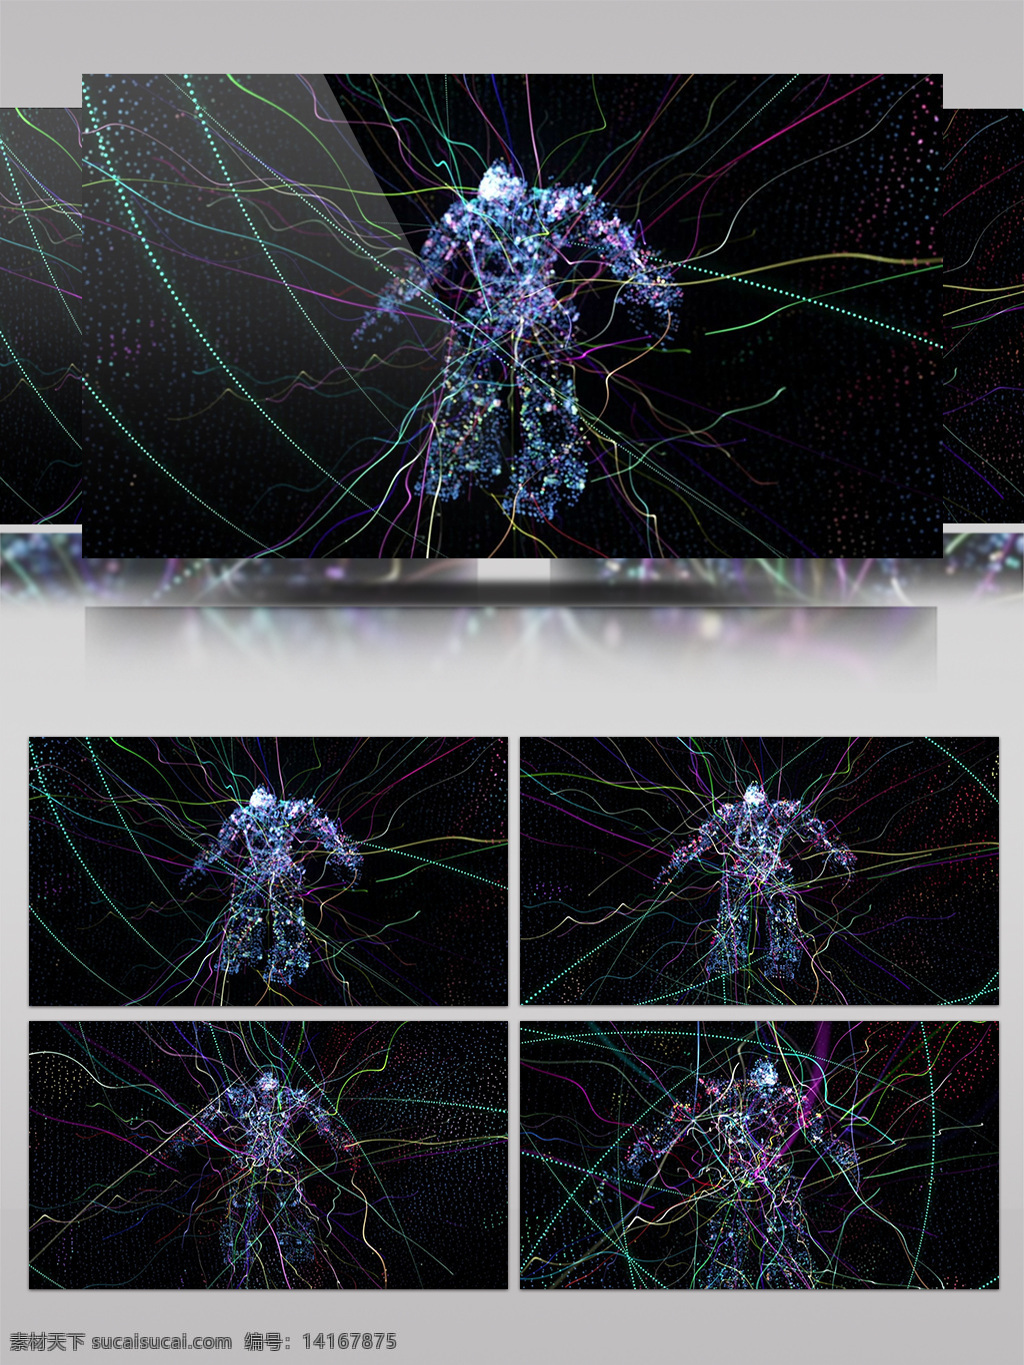 模拟 抽象 视频 虚幻人物 科幻素材 特效大片 进隧道 炫酷回旋 光芒穿梭 光景素材 高清素材 唯美素材 光特效素材